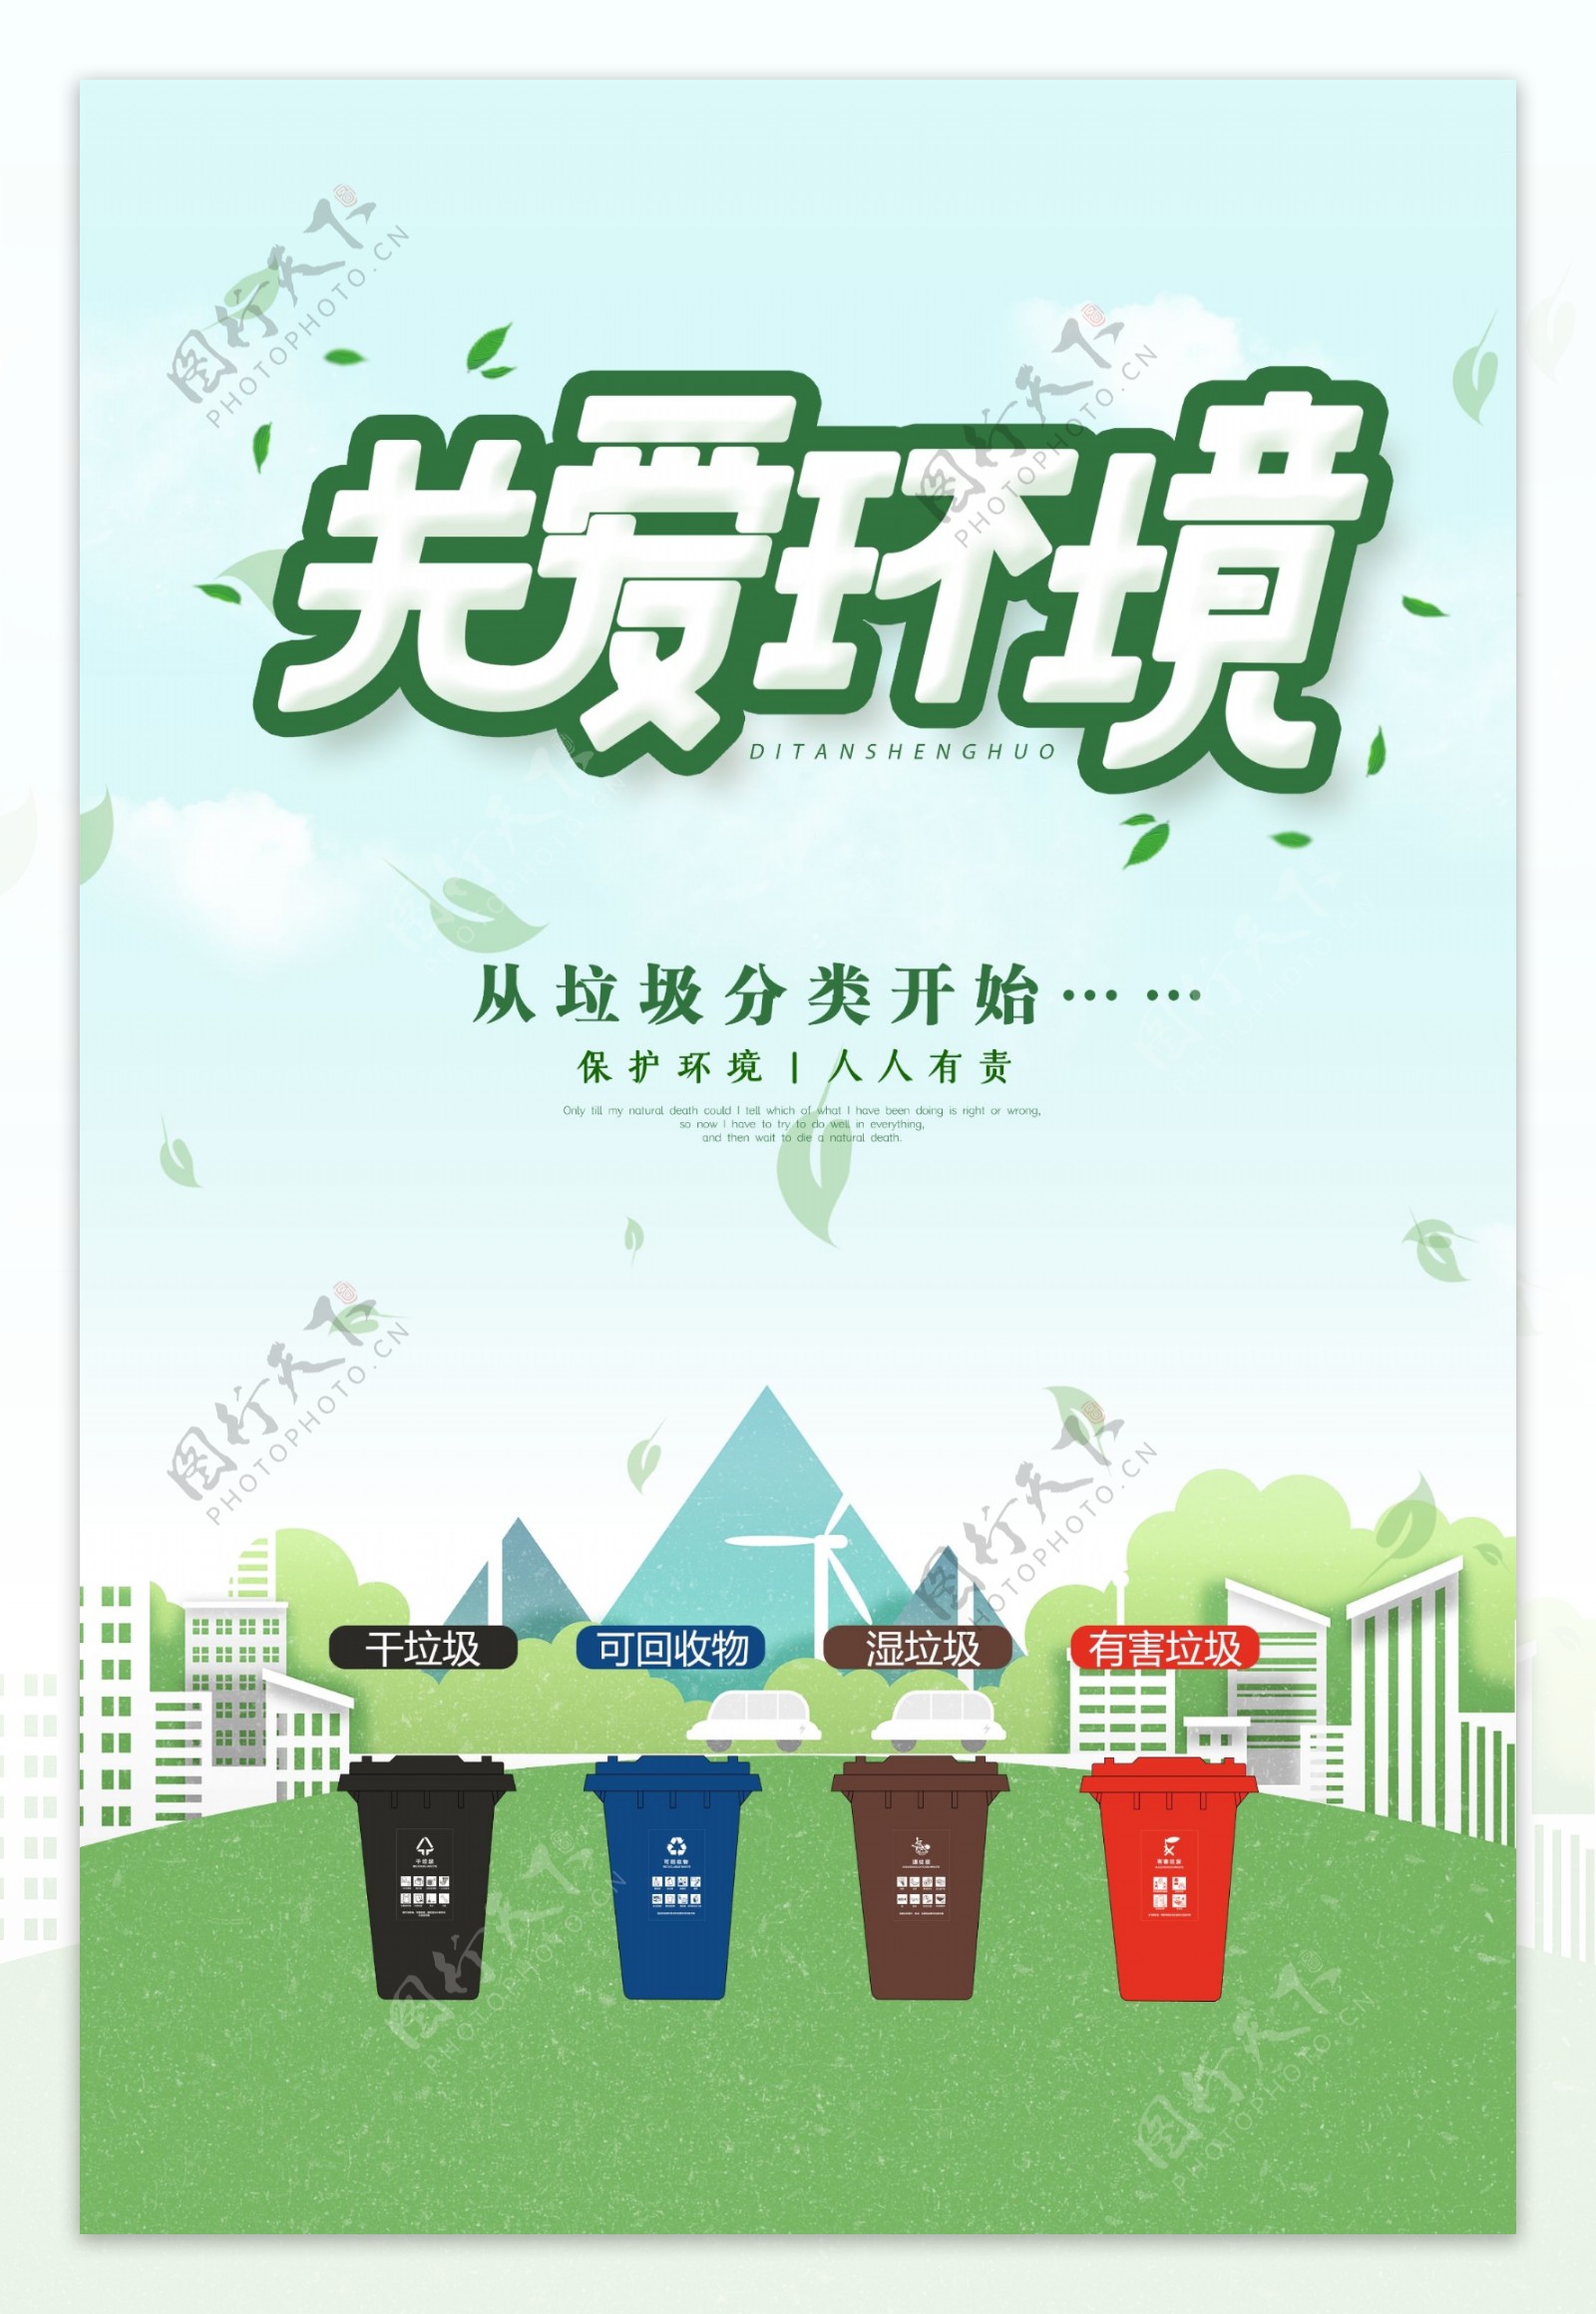 上海垃圾分类关爱环境垃圾筒图片